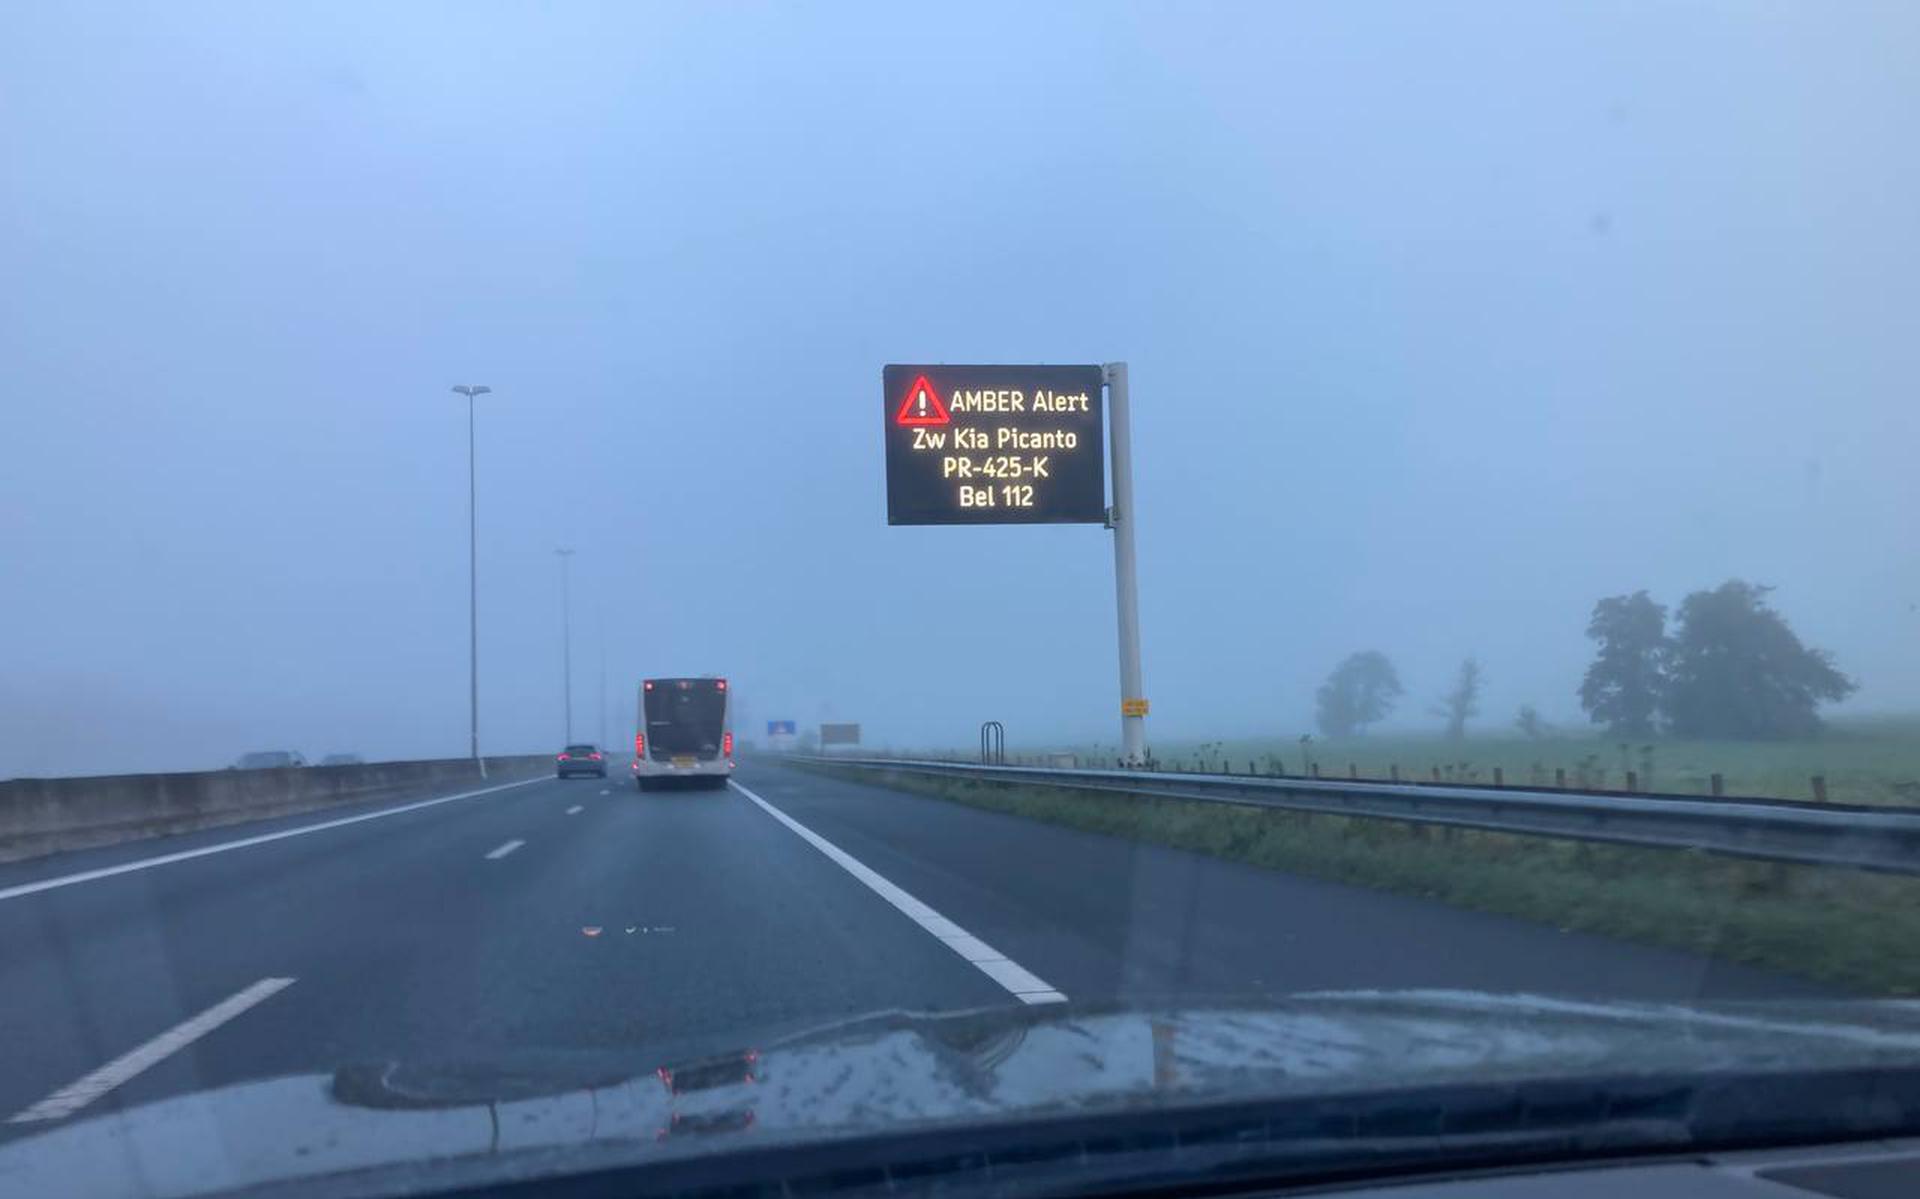 Het amber alert wordt ook getoond op dit matrixbord langs de A28, tussen De Punt en Haren in de richting van Groningen.